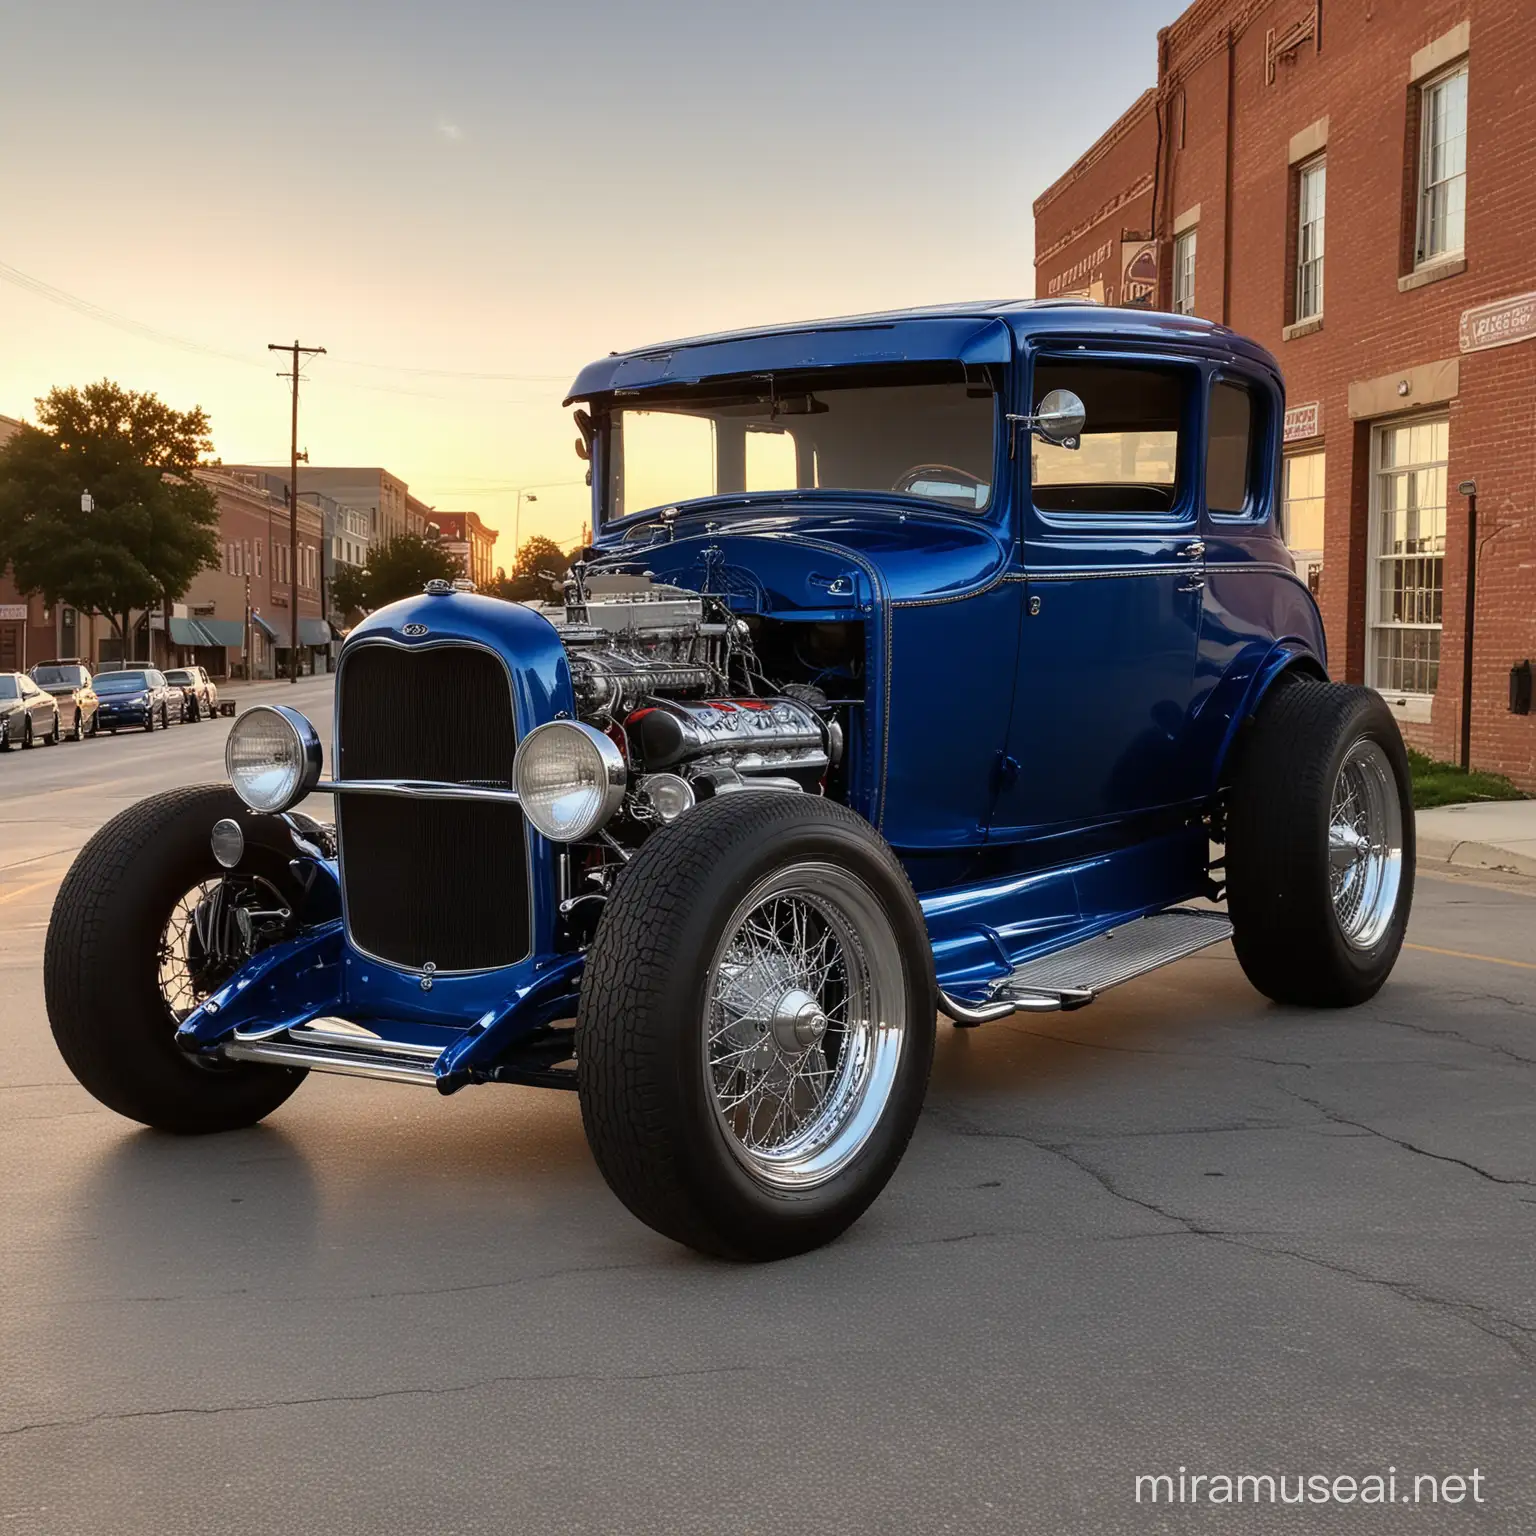 Ford modelo A 1931, hot rod, con neumáticos anchos y grandes, rines Cragar, celeste metalizado, estacionado en una calle de Jefferson City Misuri, a las 6 de la tarde, el sol poniente con su luz incide sobre el coche que se ve espectacular.